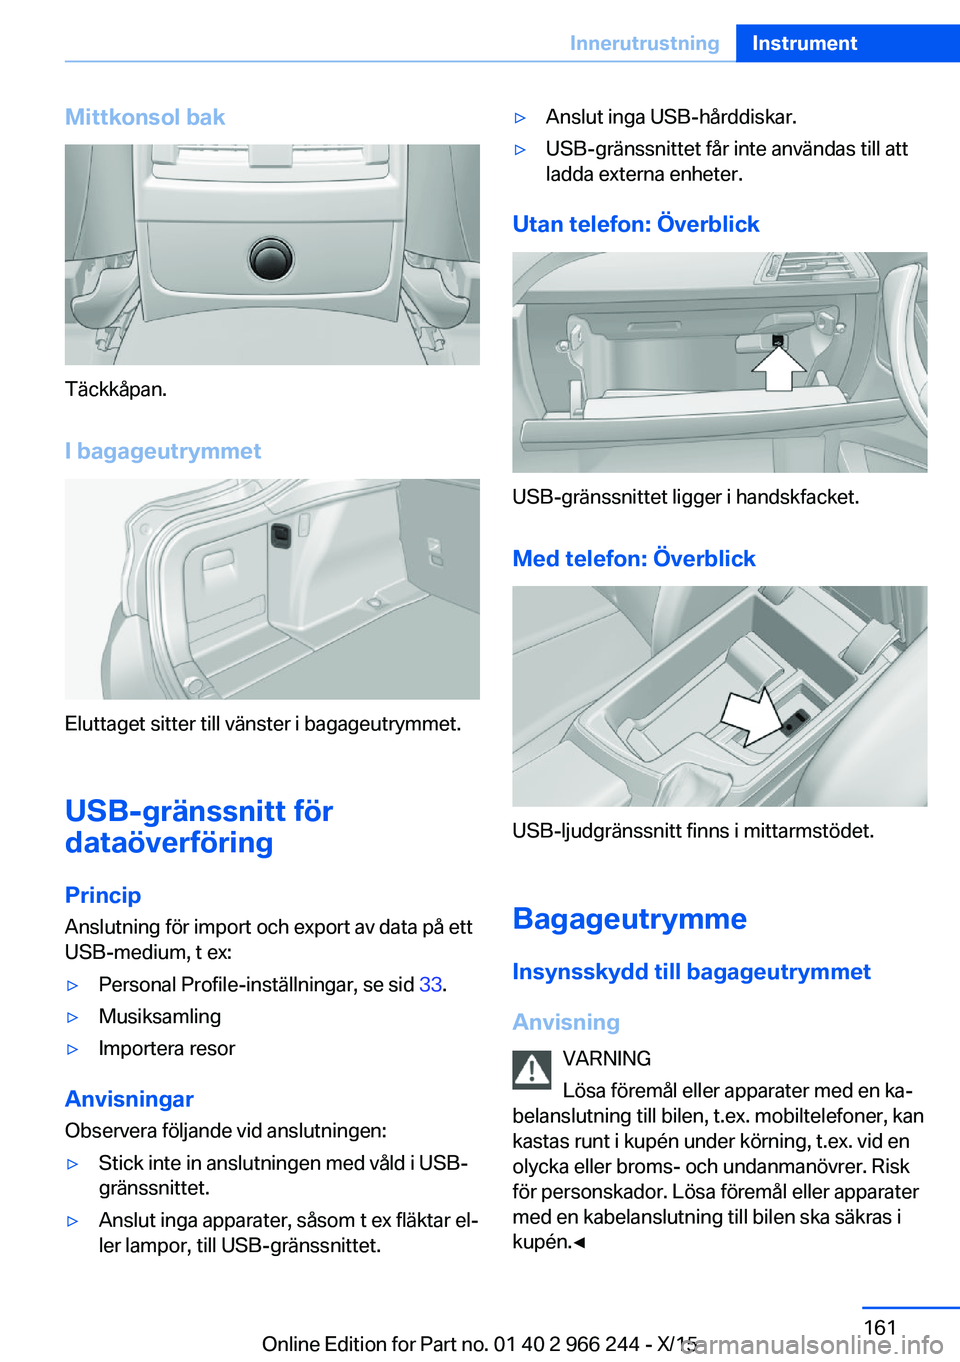 BMW 4 SERIES GRAN COUPE 2016  InstruktionsbÖcker (in Swedish) Mittkonsol bak
Täckkåpan.I bagageutrymmet
Eluttaget sitter till vänster i bagageutrymmet.
USB-gränssnitt för
dataöverföring
Princip Anslutning för import och export av data på ett
USB-medium,